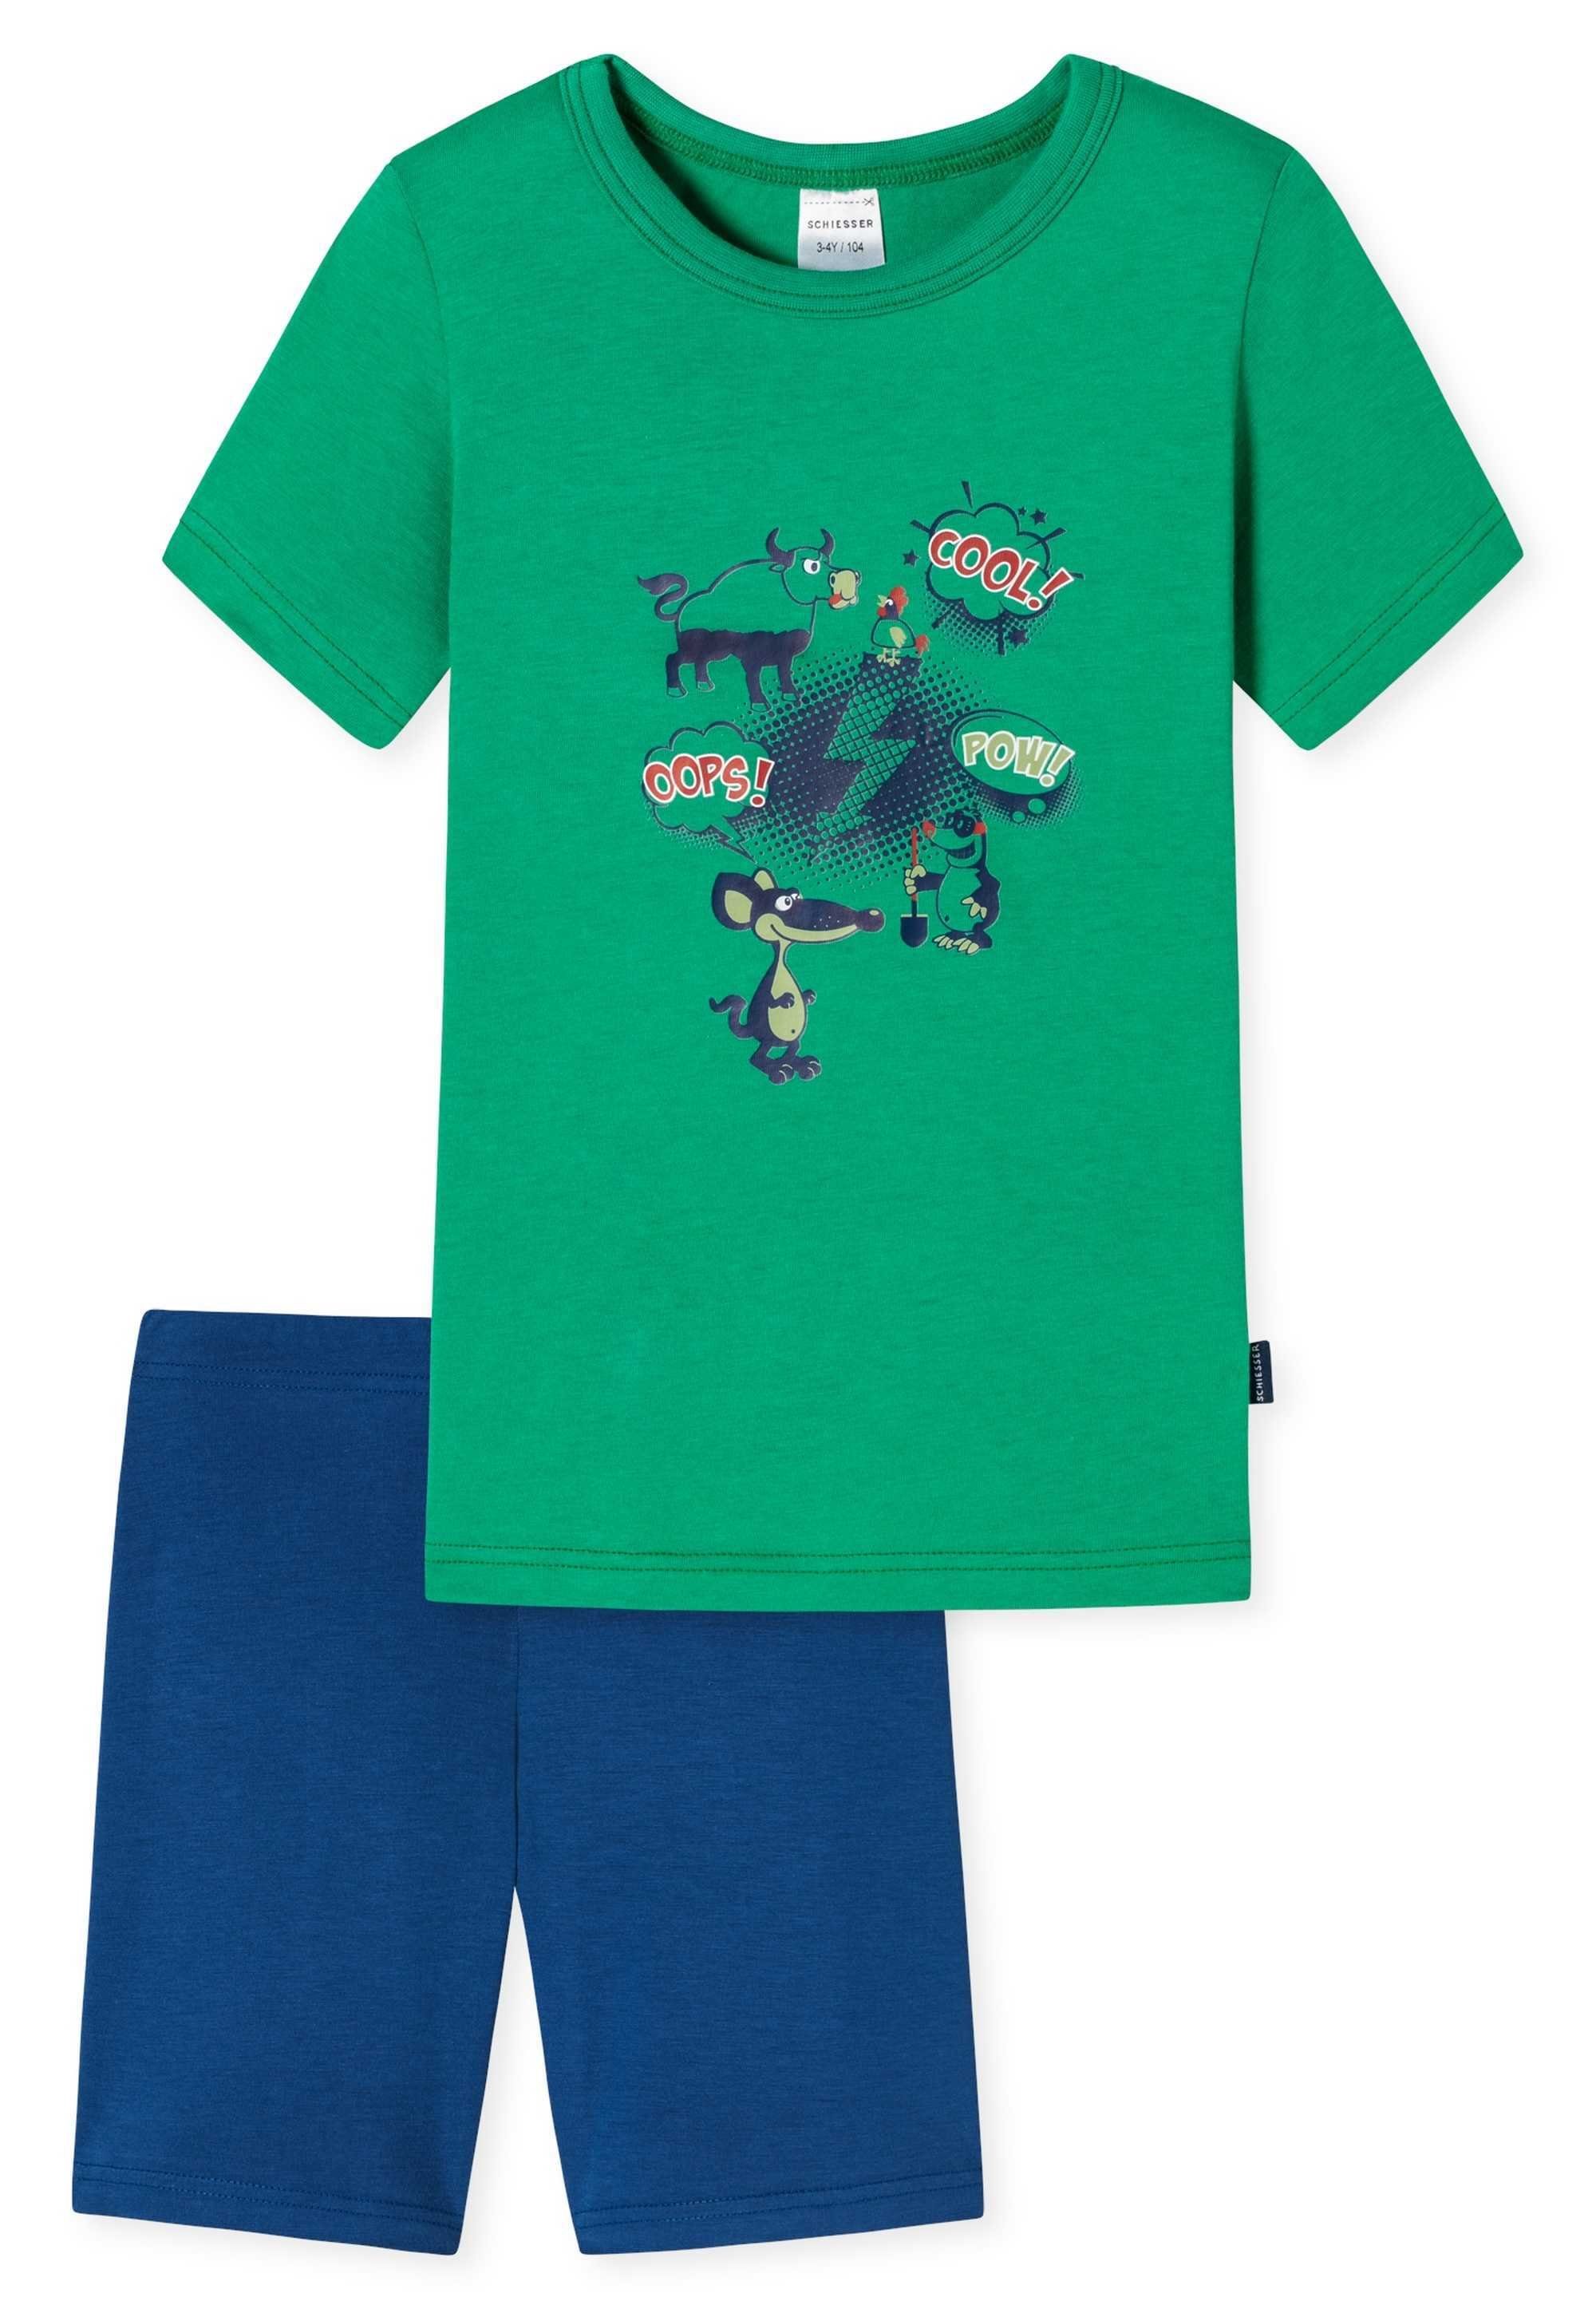 2-tlg. Schlafanzug Grün/Blau kurz, Kinder - Jungen Set Pyjama Schiesser